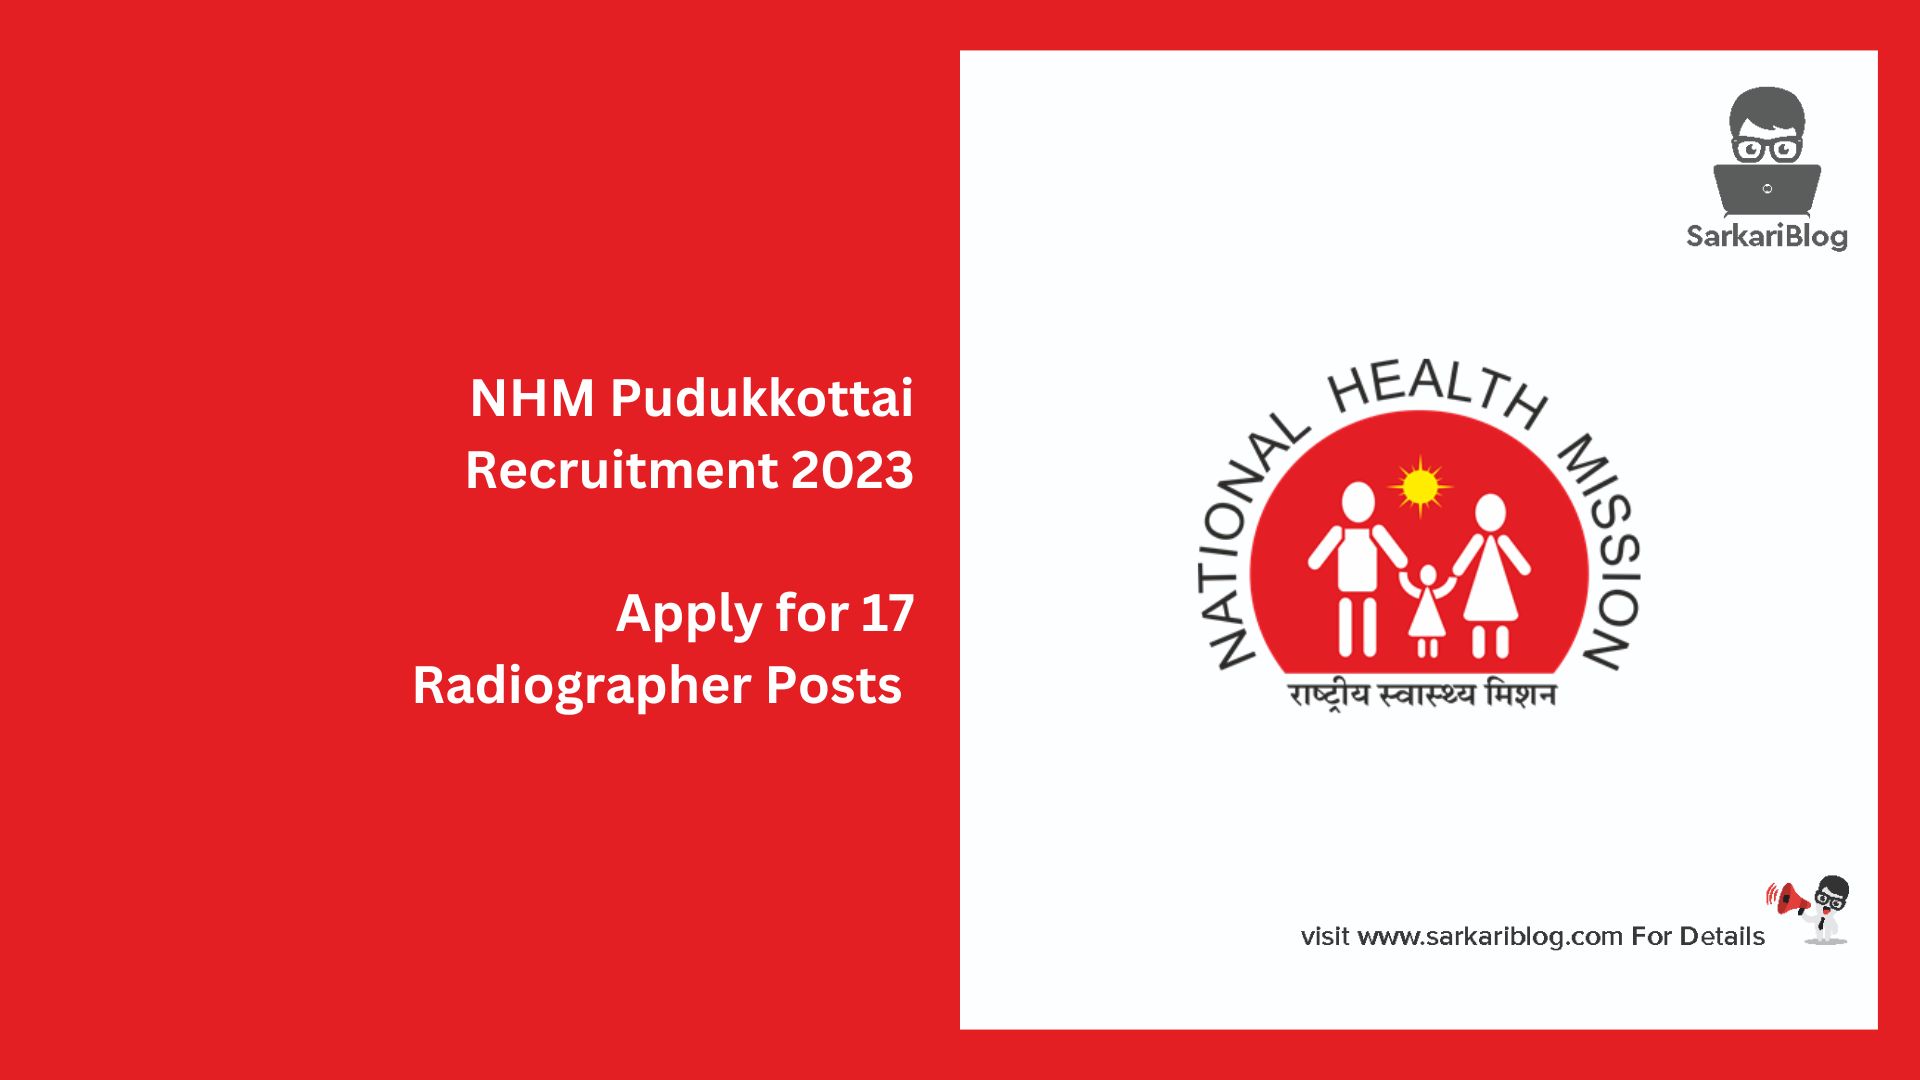 NHM Pudukkottai Recruitment 2023